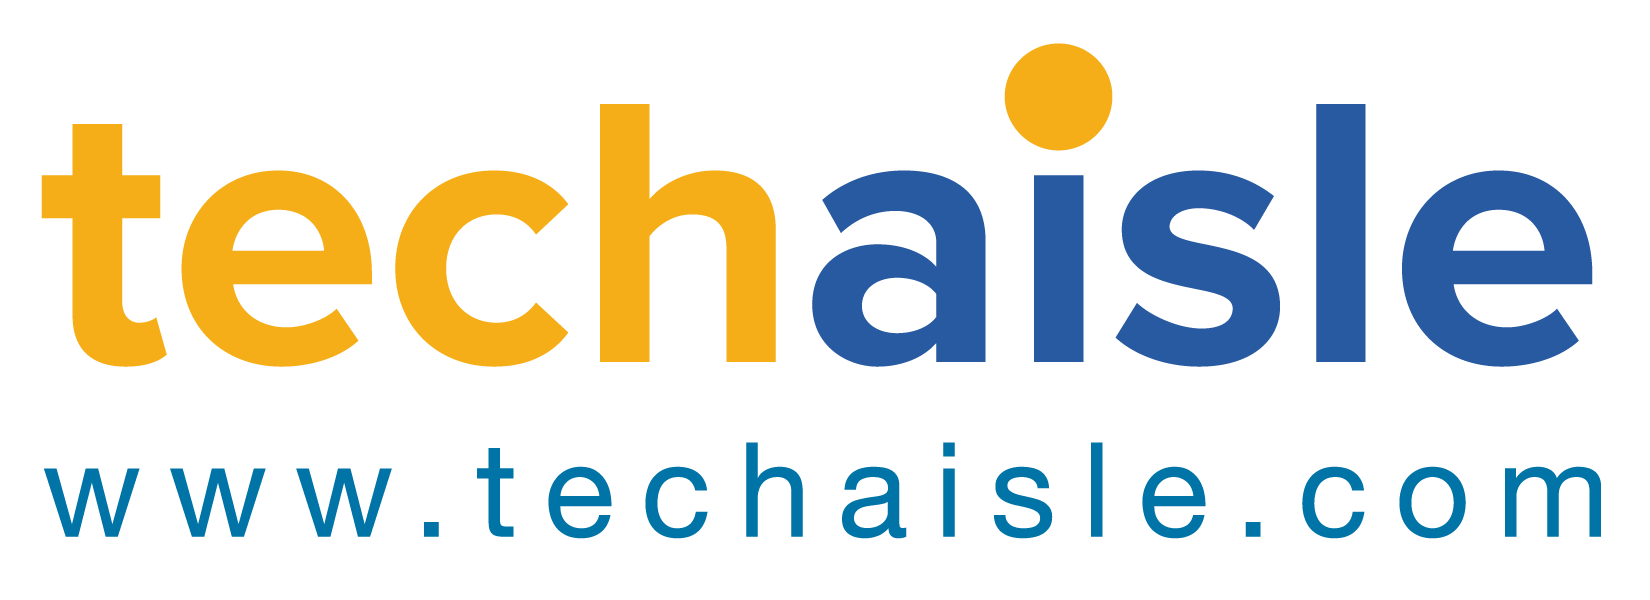 Techaisle logo